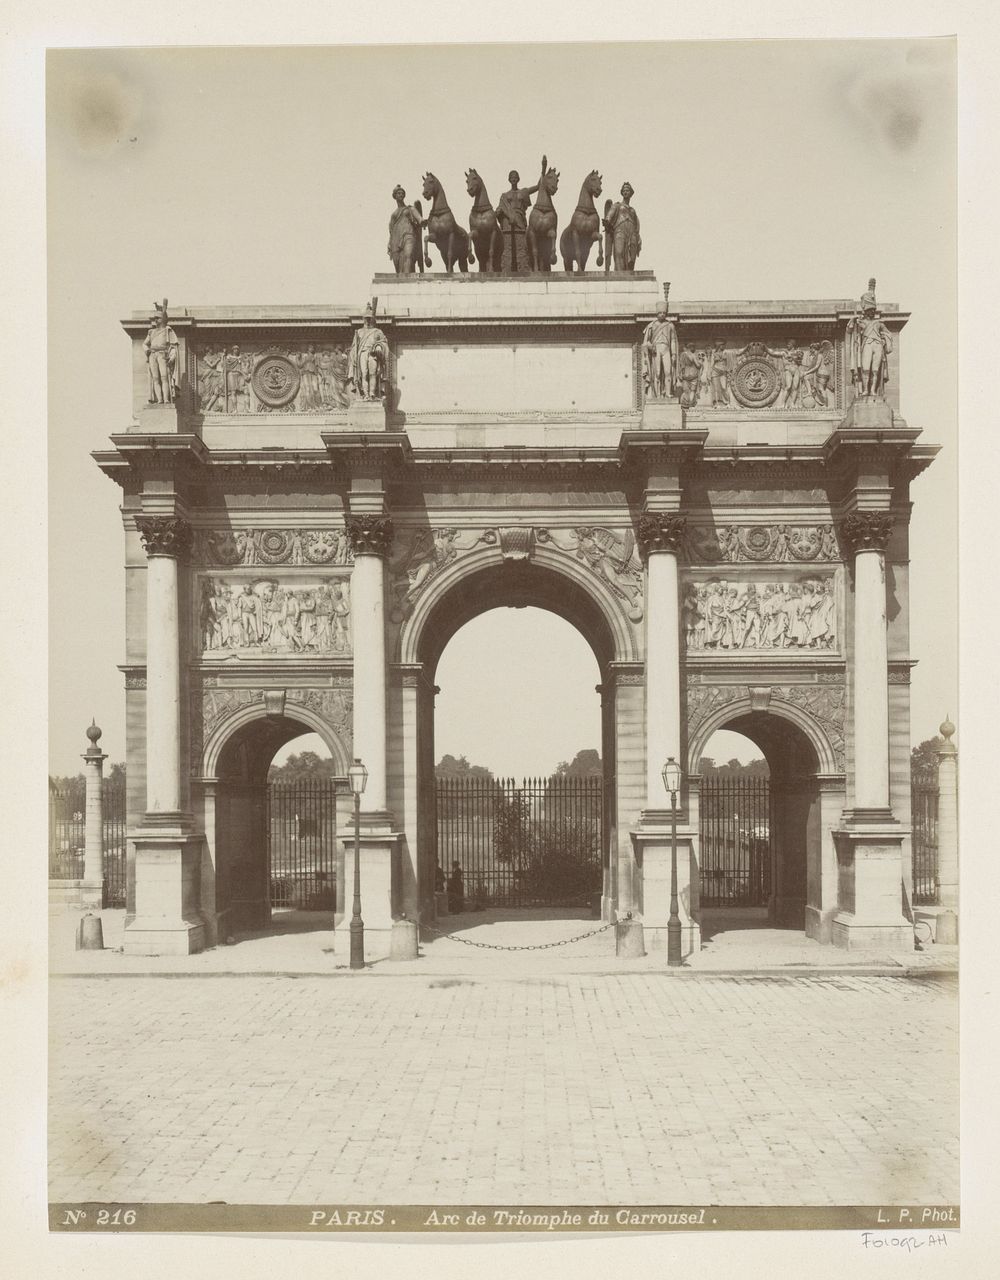 De Arc de Triomphe du Carrousel in Parijs, gezien richting Jardin des Tuileries (c. 1880 - c. 1900) by Louis Antoine Pamard